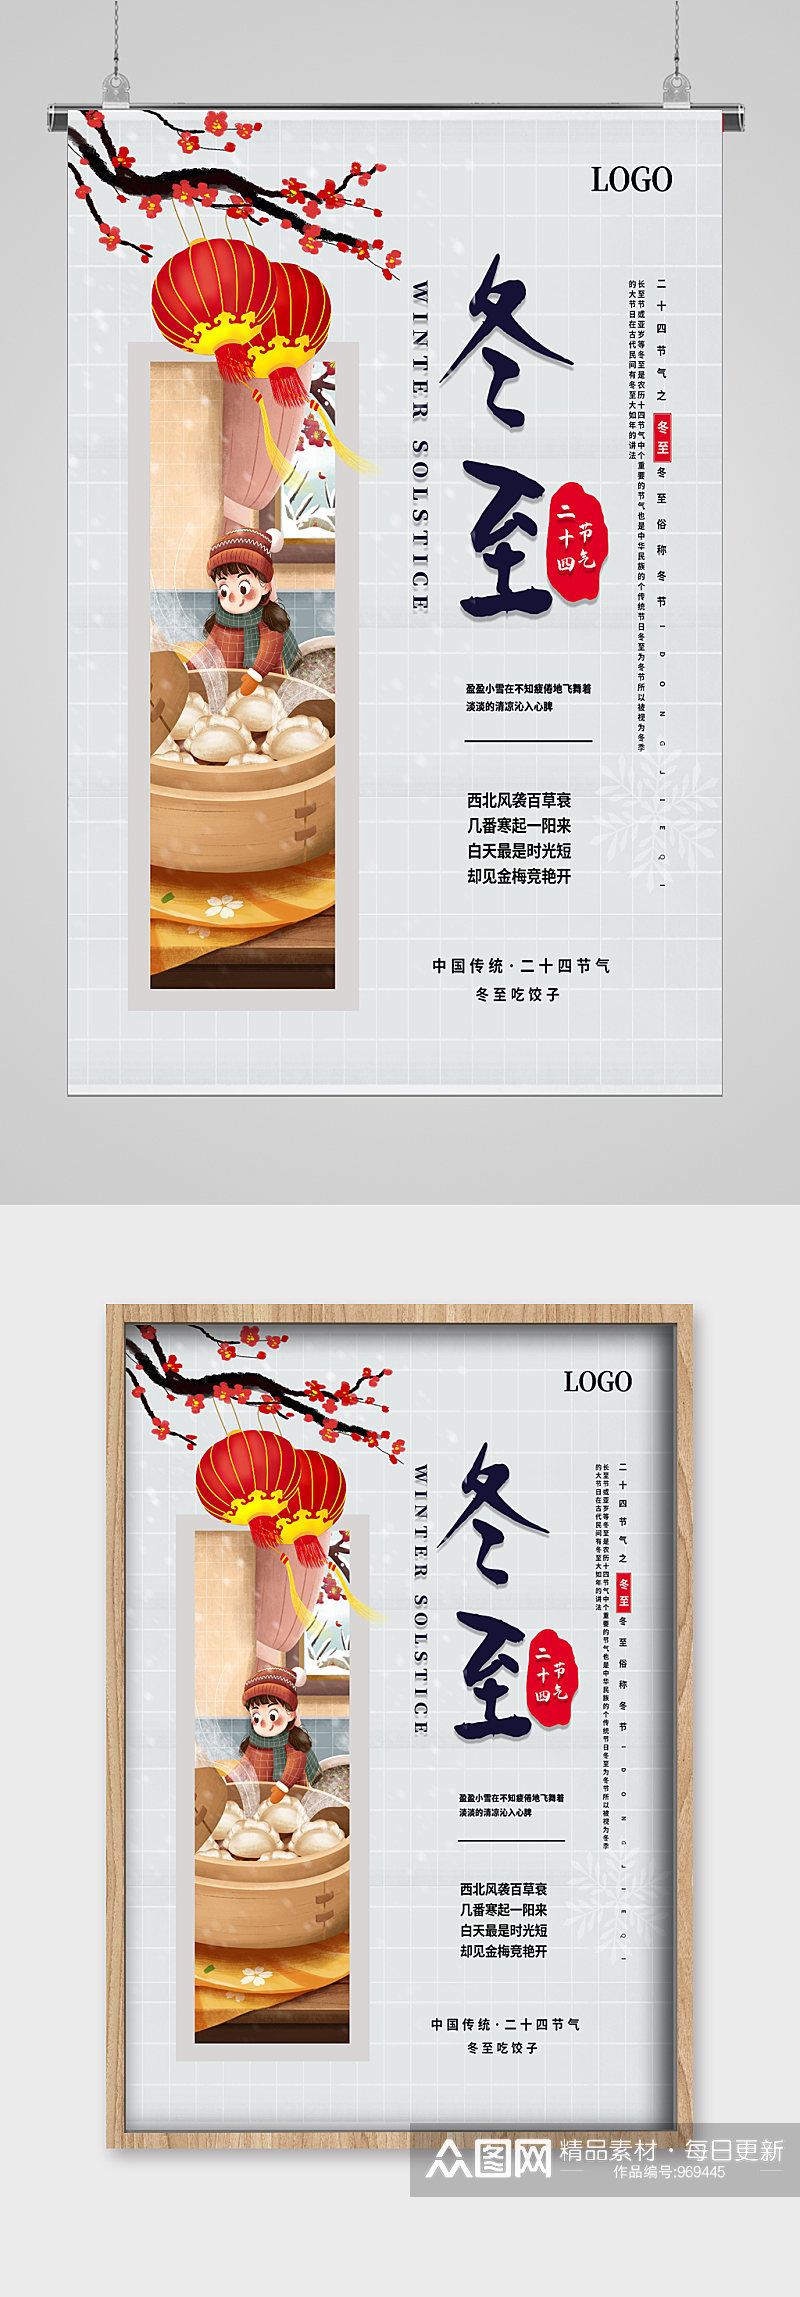 梅开时节吃饺子冬至节气宣传海报素材